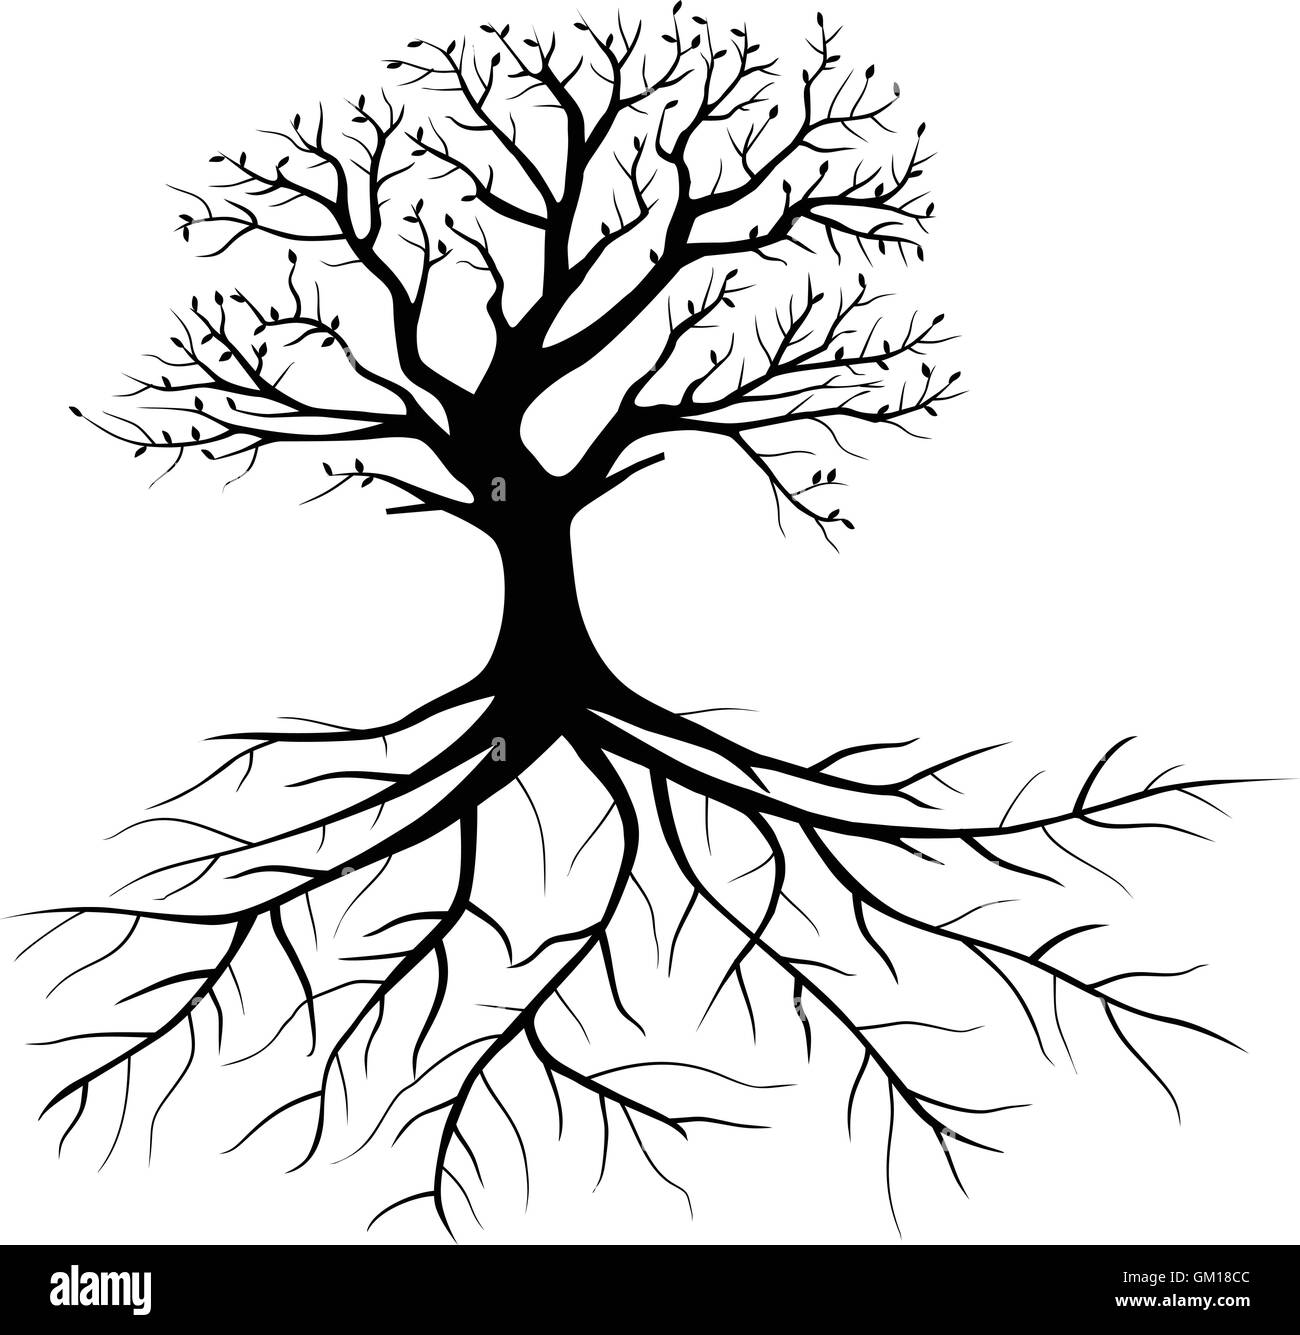 arbre avec des racines Illustration de Vecteur